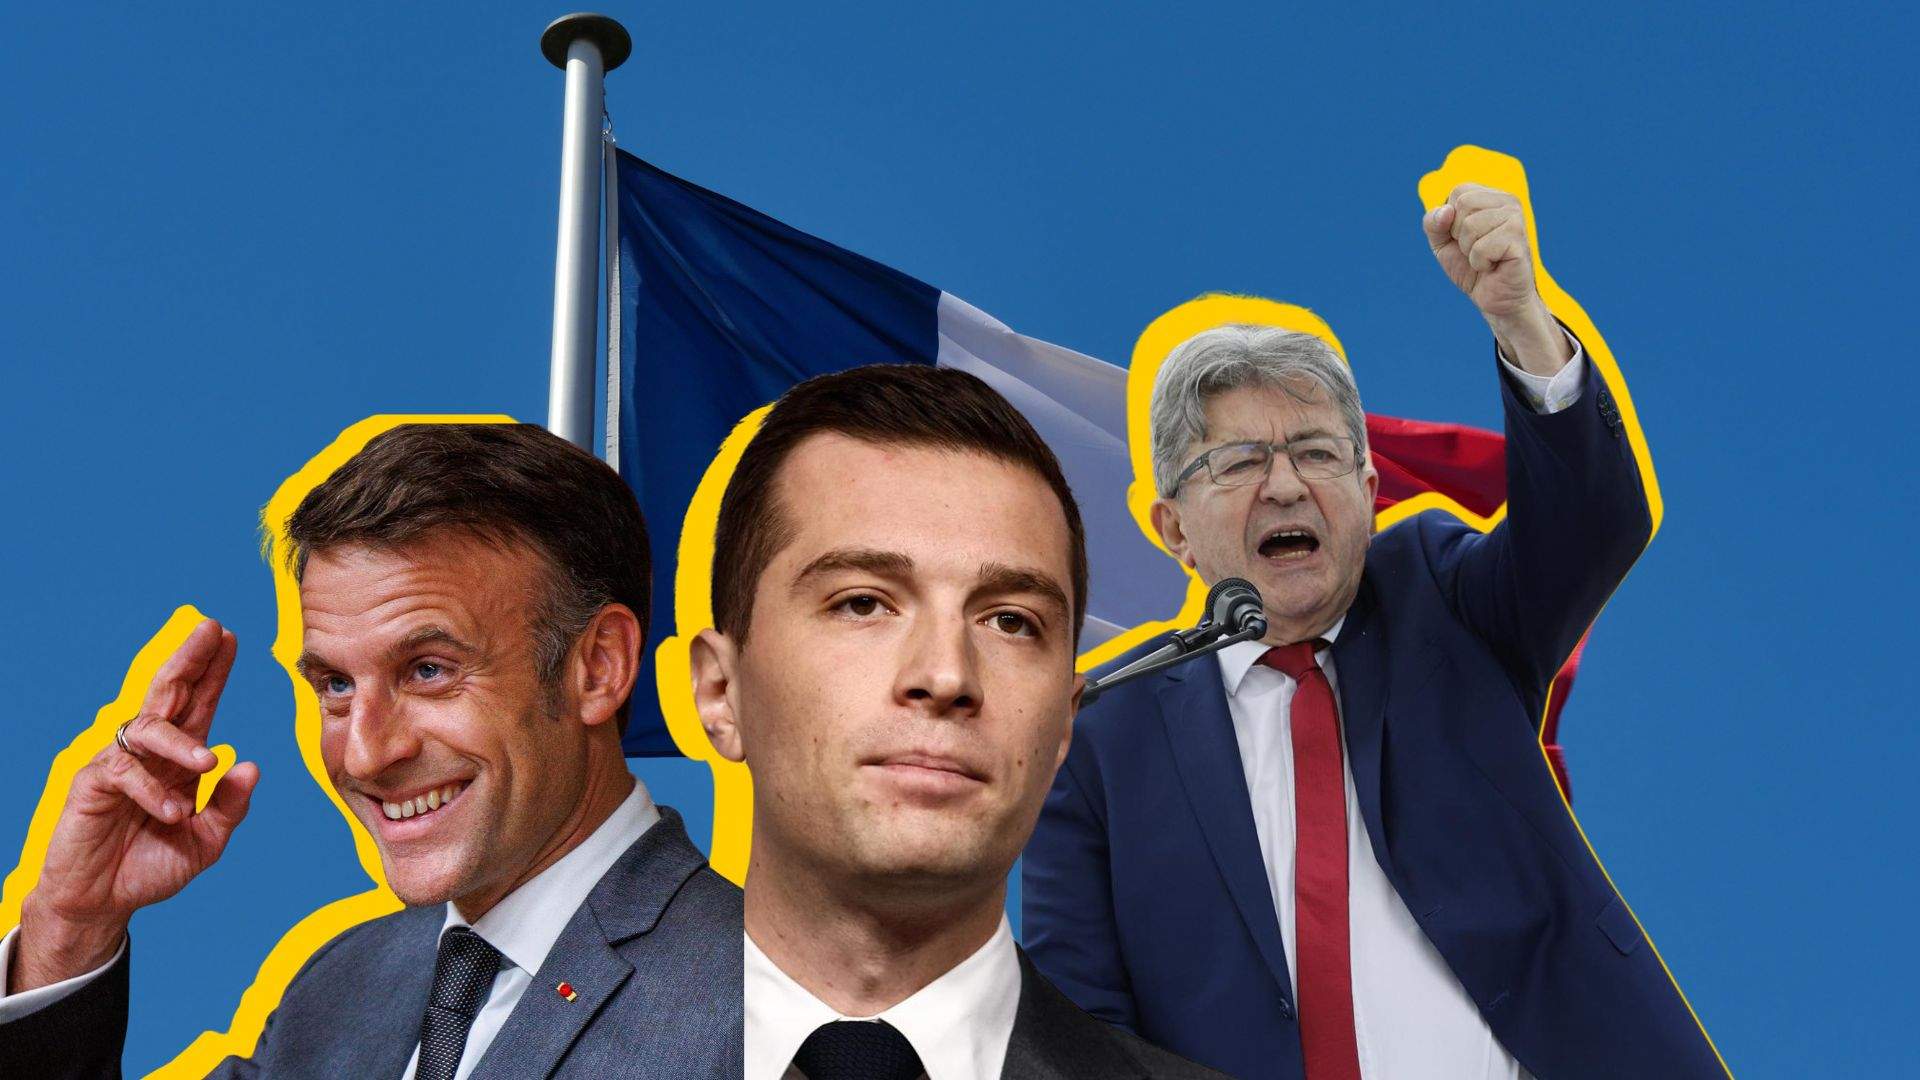 Els extrems es disputen les eleccions a l'Assemblea Nacional: el pitjor panorama per a França?